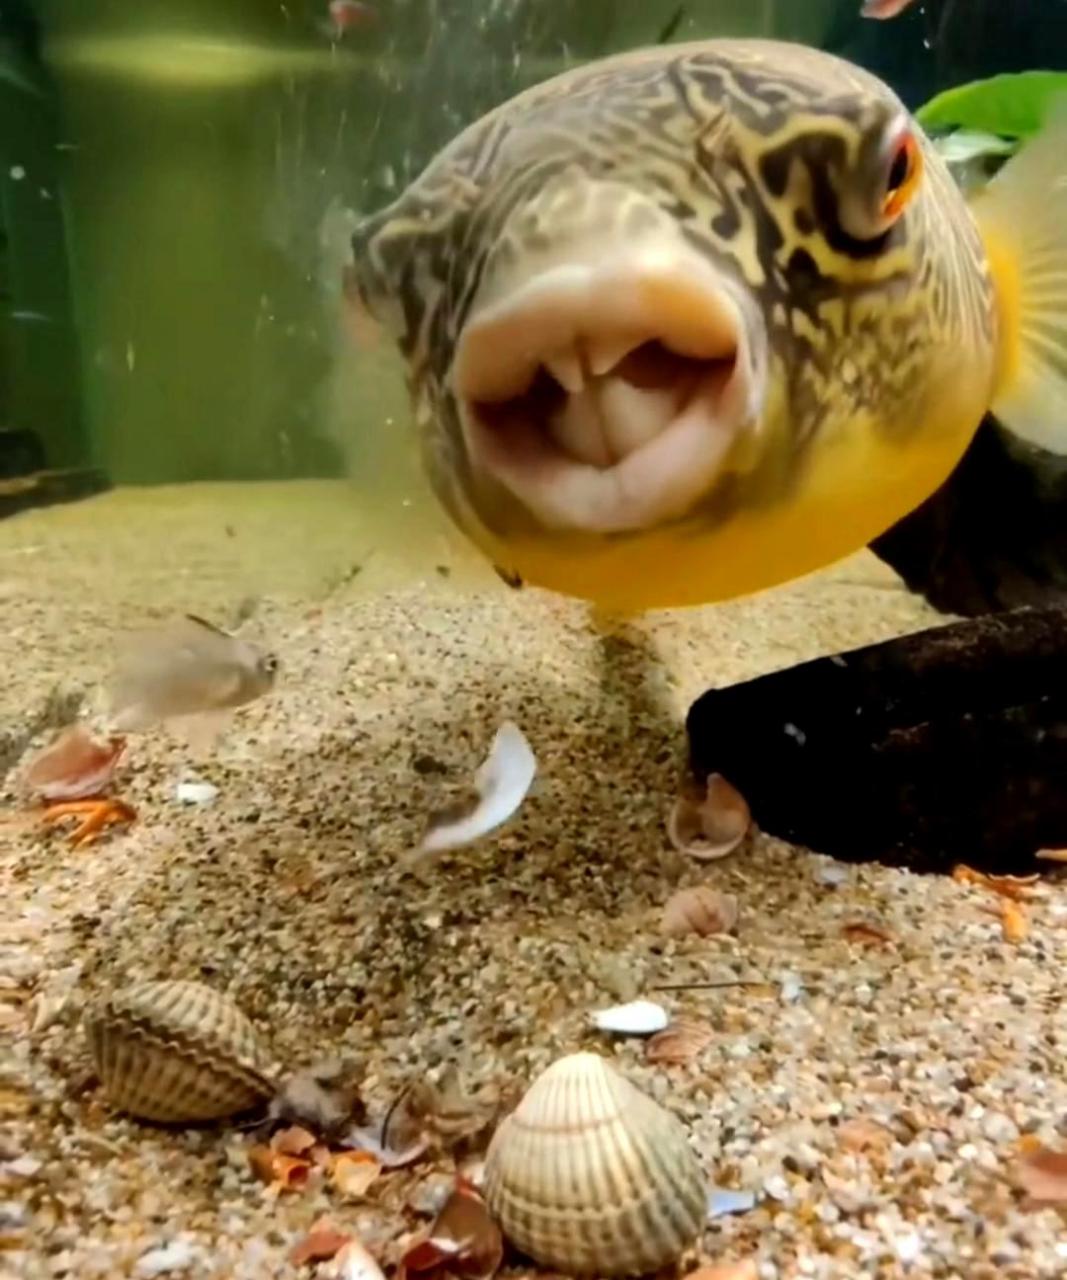 这种鱼牙齿非常锋利,能轻松咬碎坚硬的贝壳,你知道它是什么吗?